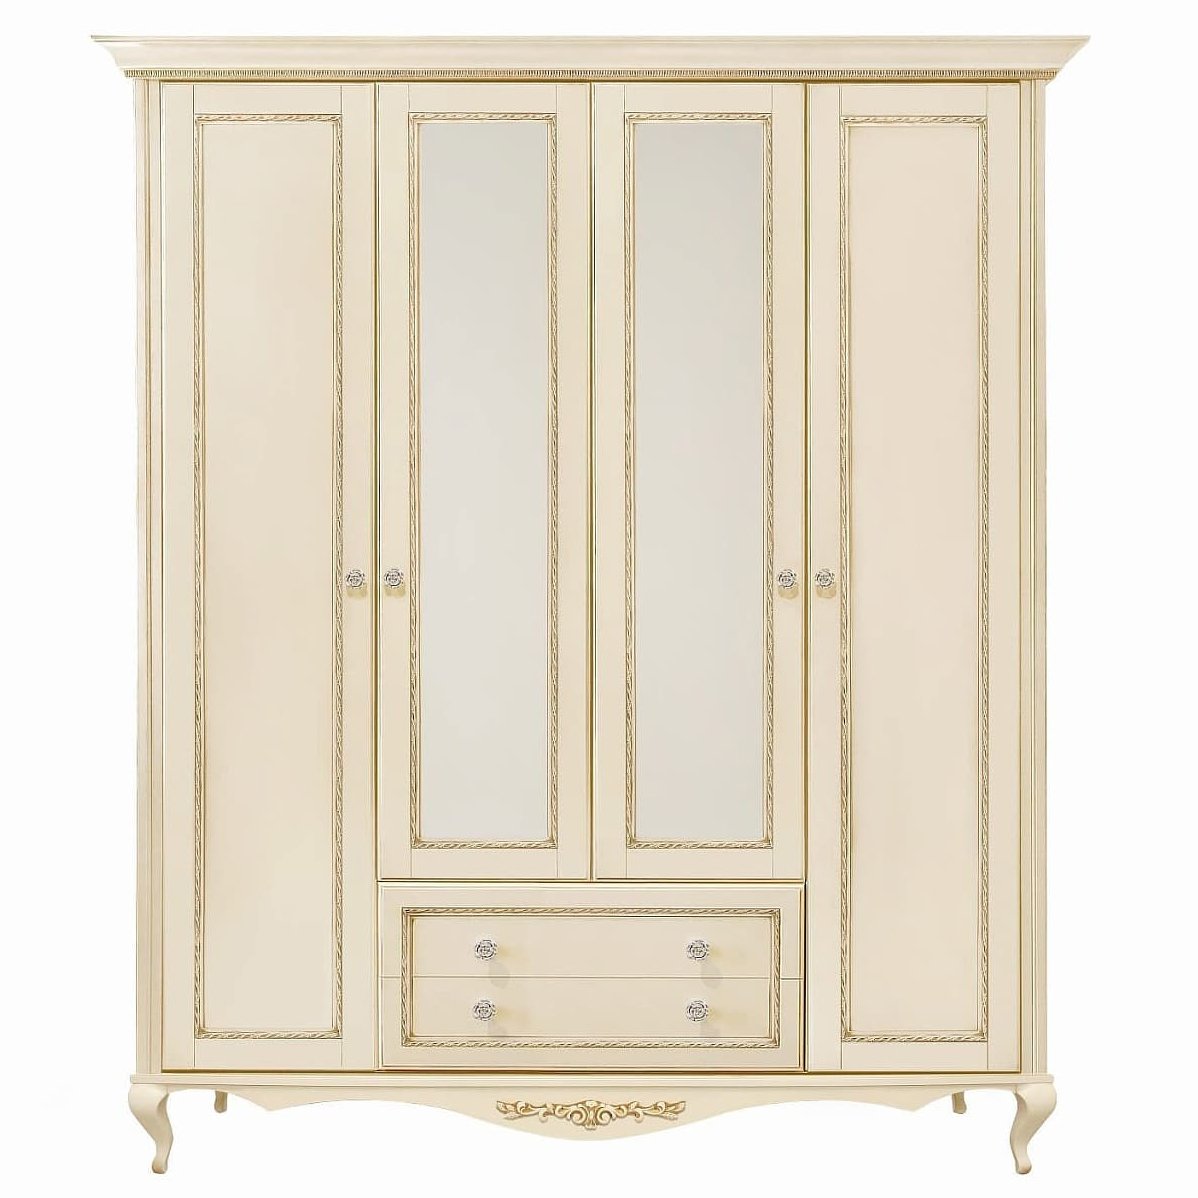 Шкаф платяной Timber Неаполь, 4-х дверный с зеркалами 204x65x227 см цвет: ваниль с золотом (T-524)T-524